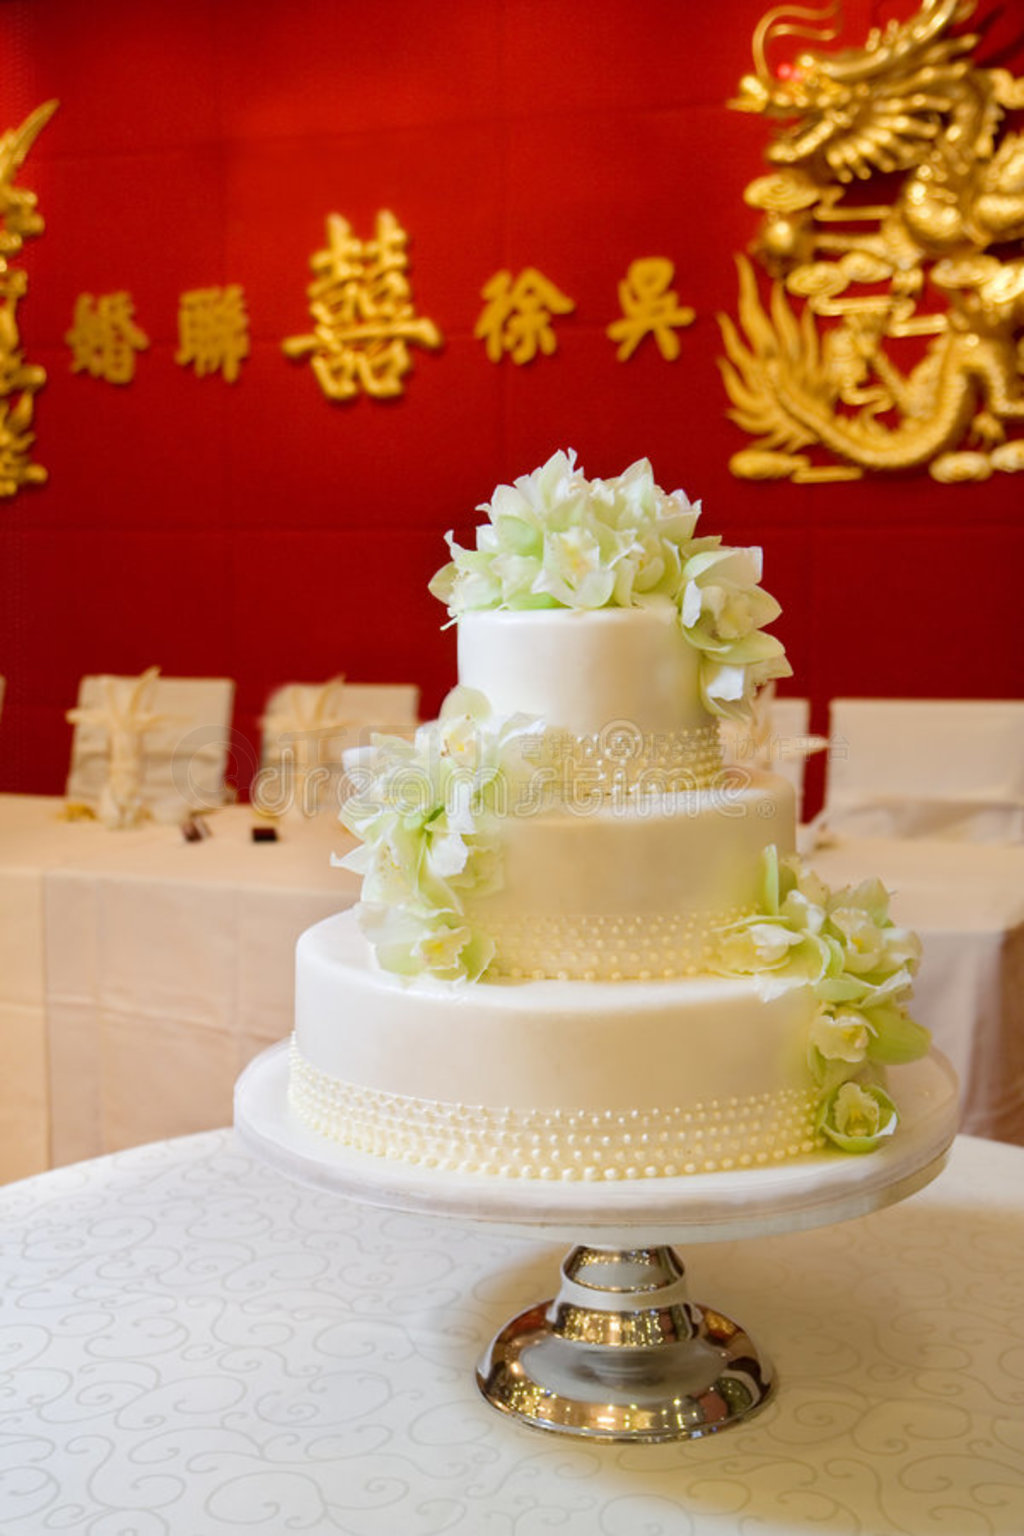 婚礼 蛋糕 结婚 - Pixabay上的免费照片 - Pixabay